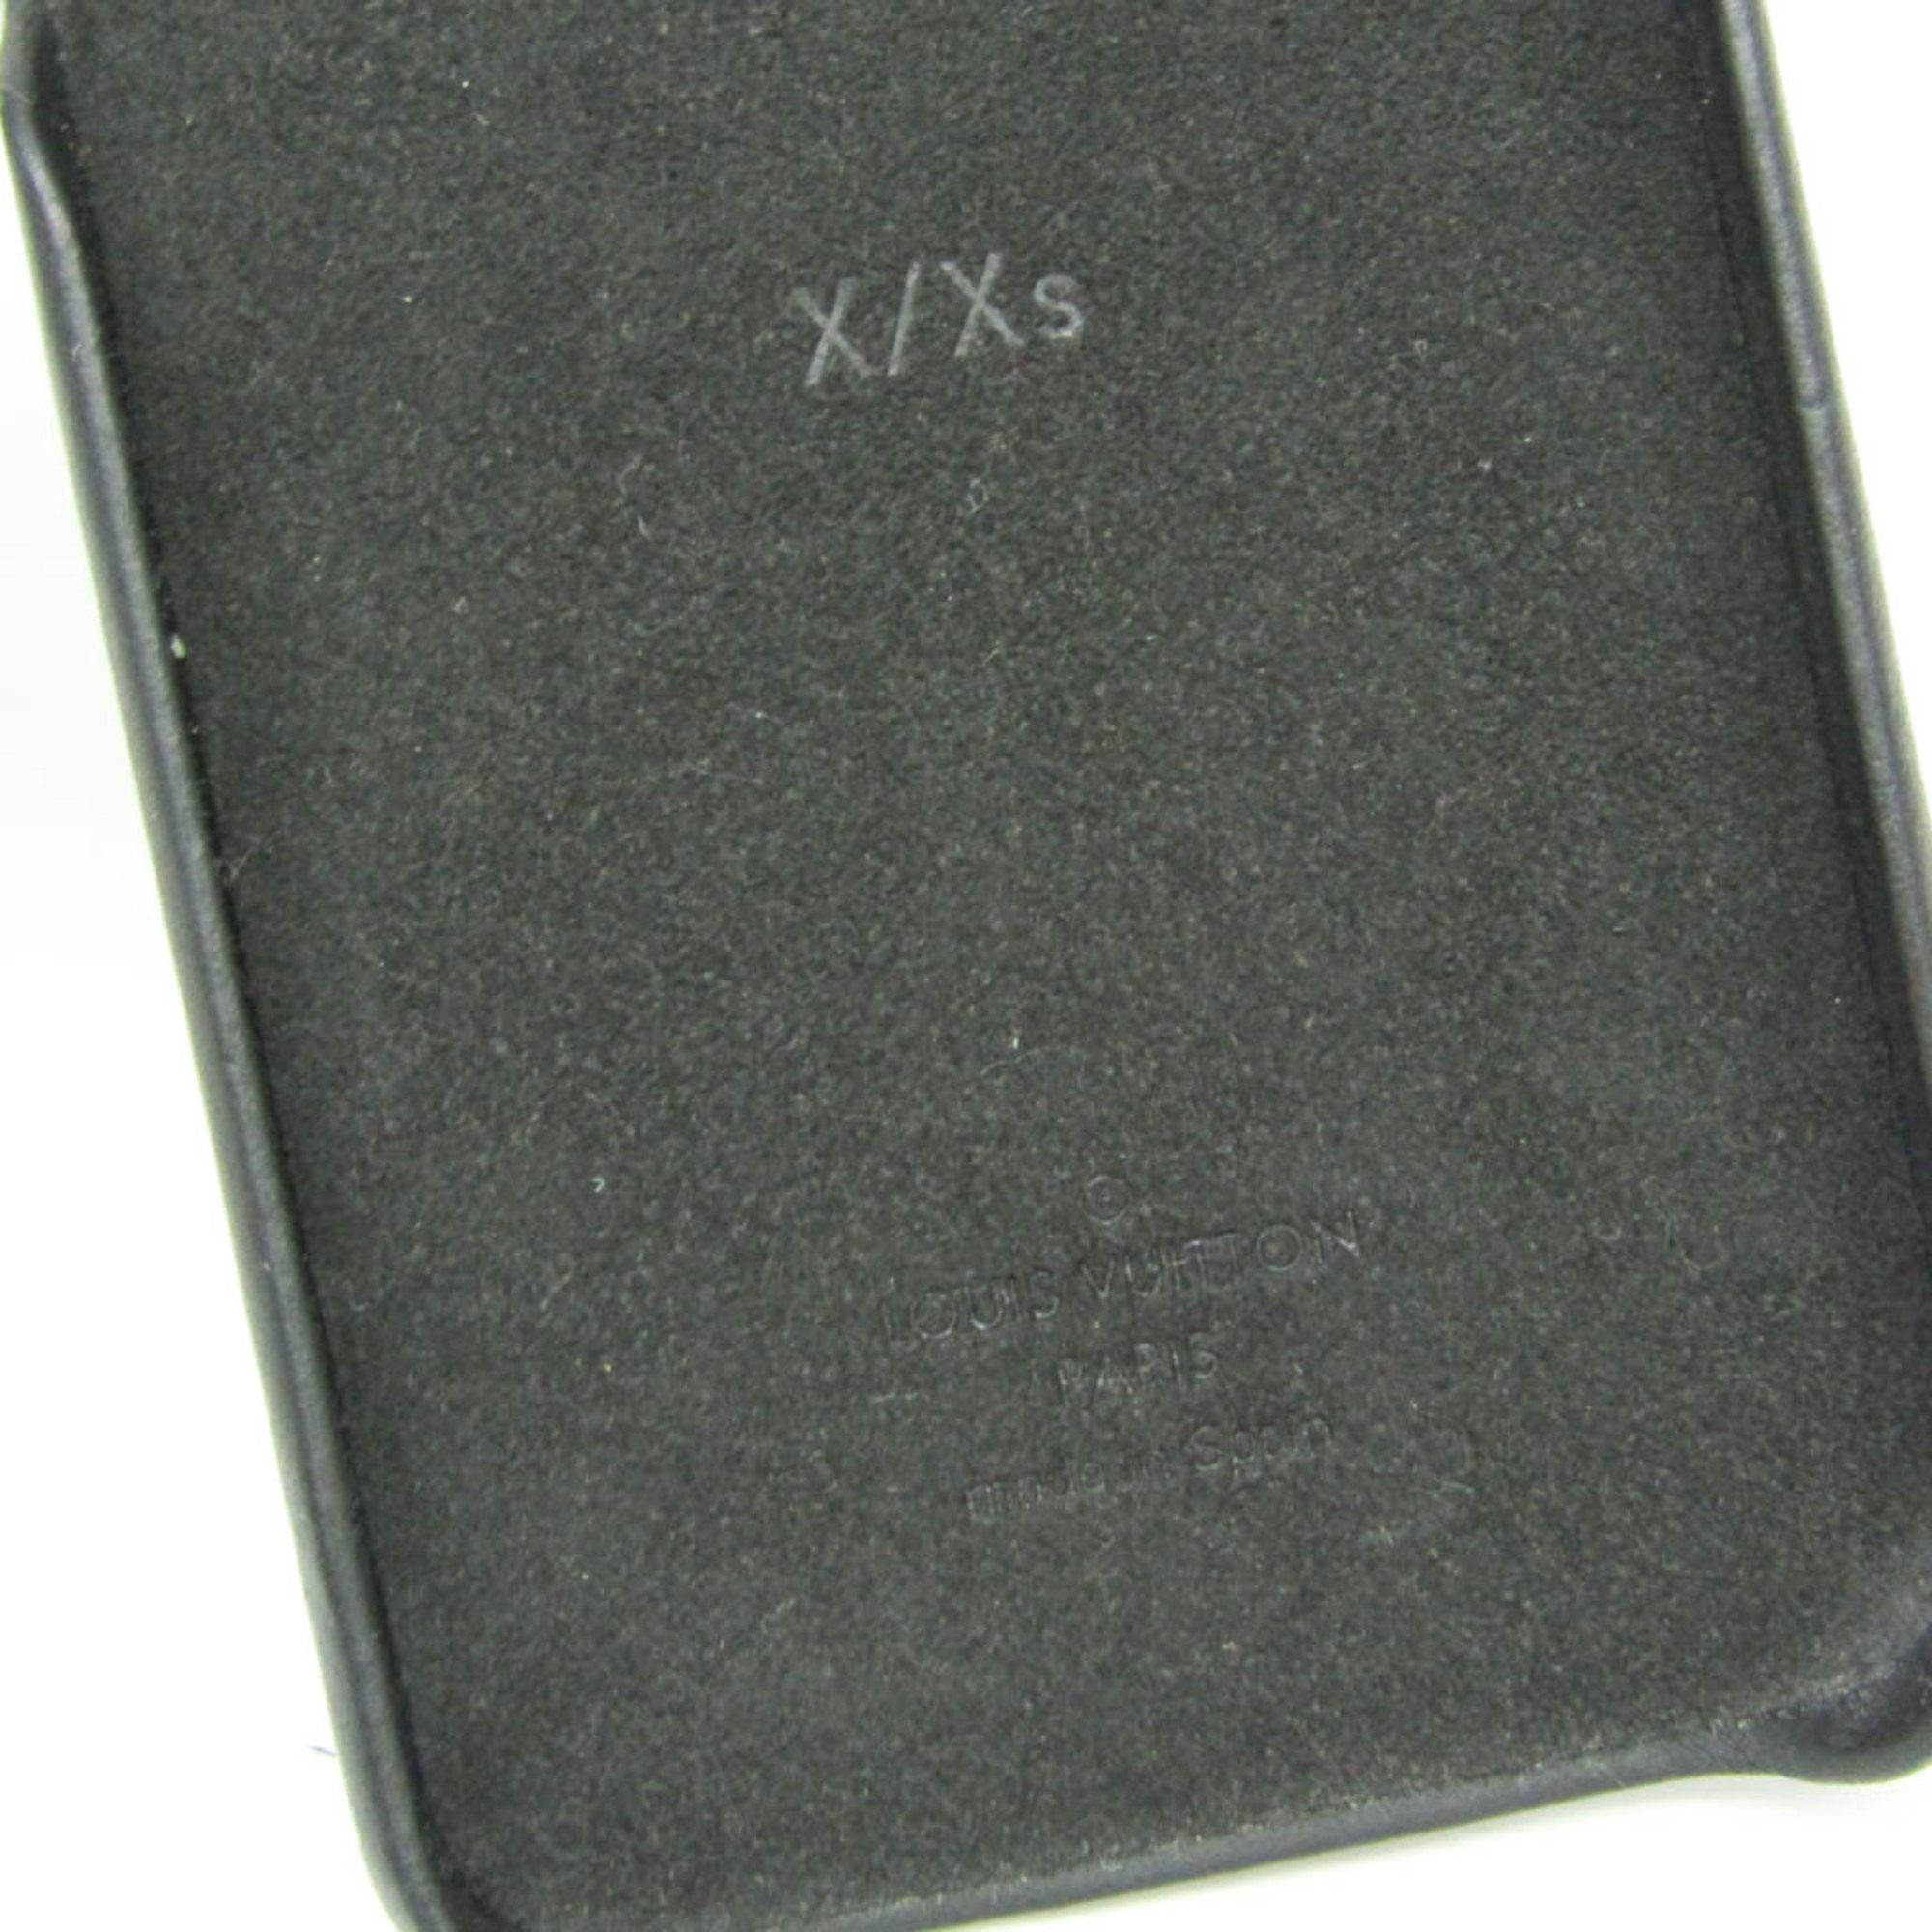 ルイ・ヴィトン(Louis Vuitton) モノグラム キャッツアイ サングラス M68793 モノグラム バンパー iPhone X 対応 モノグラム,ノワール